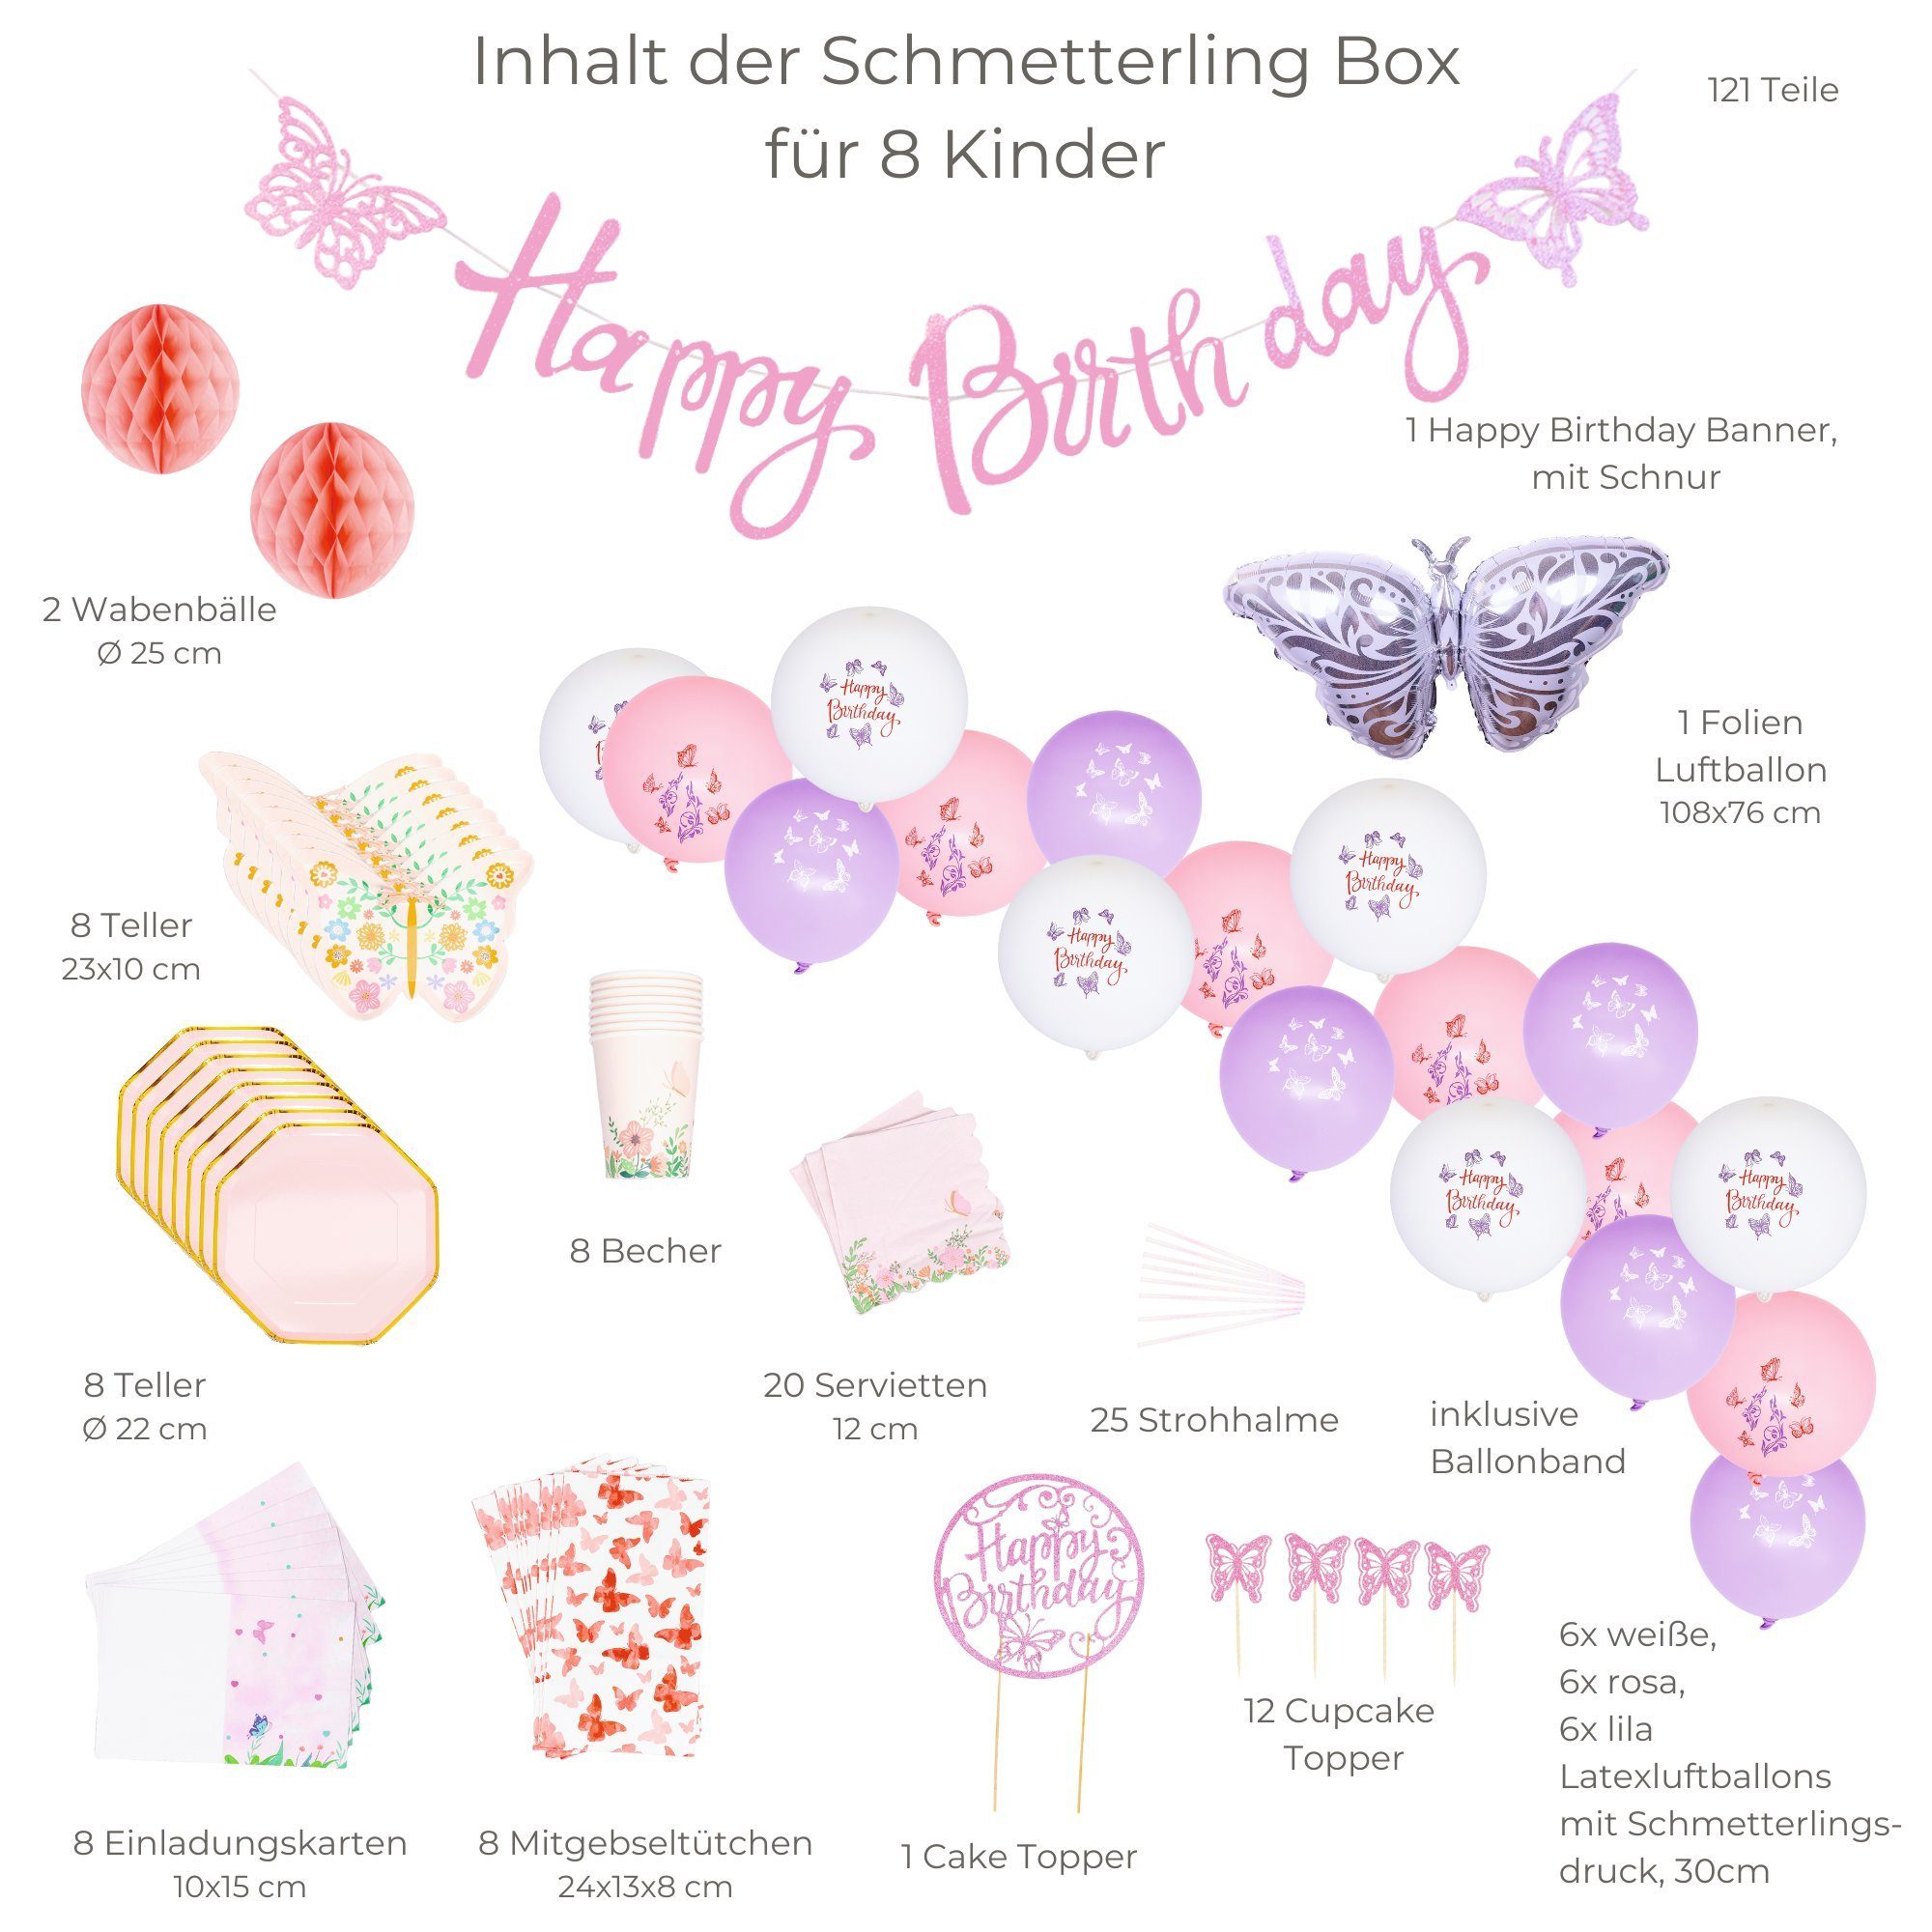 einem - Birthday Kindergeburtstag, aus little Birthday 121 Teile 8 little für Kinder, Papierdekoration Set Mottobox für Schmetterling